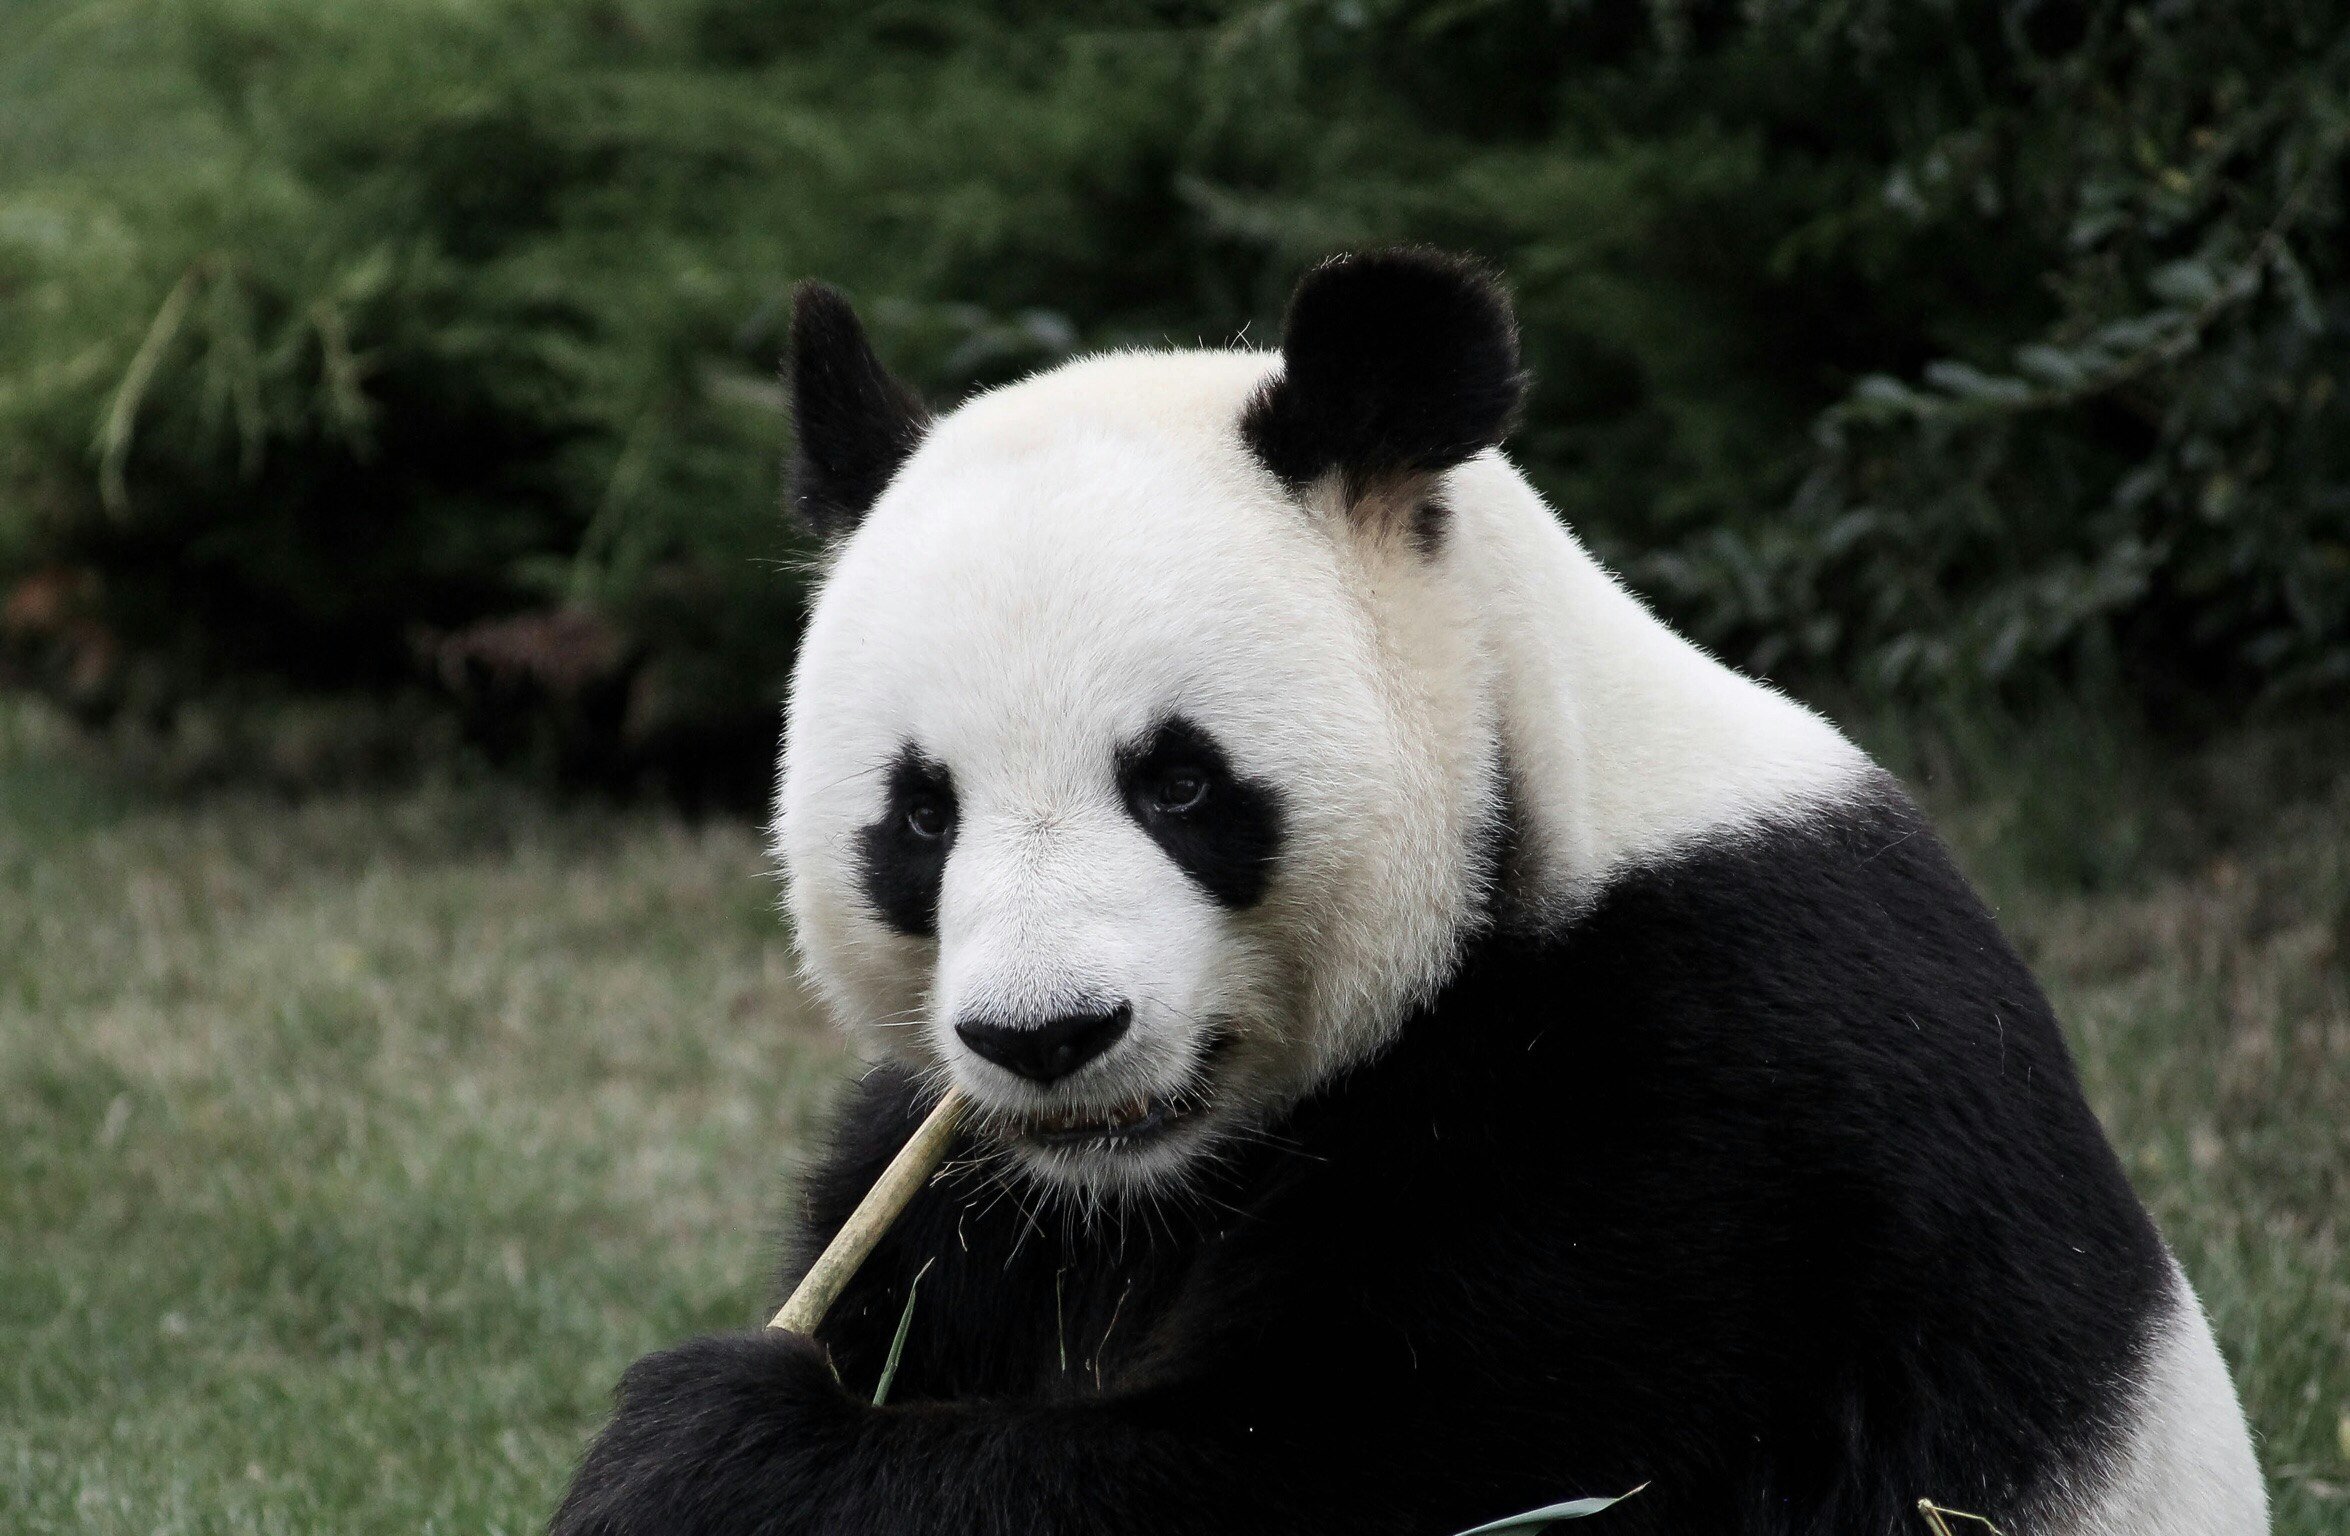 a panda eats bamboo in its habitat